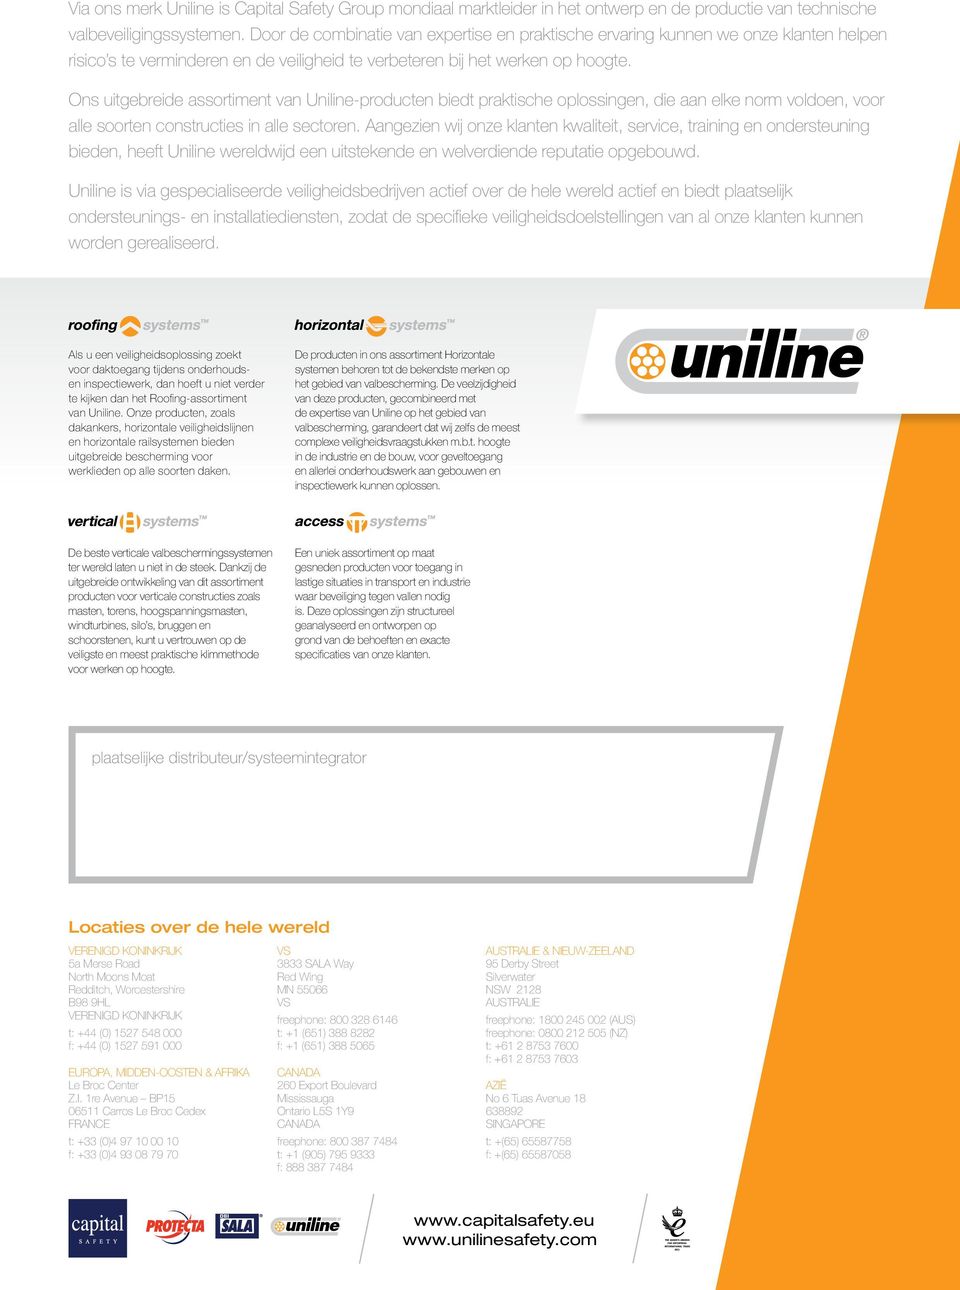 Ons uitgebreide assortiment van Uniline-producten biedt praktische oplossingen, die aan elke norm voldoen, voor alle soorten constructies in alle sectoren.